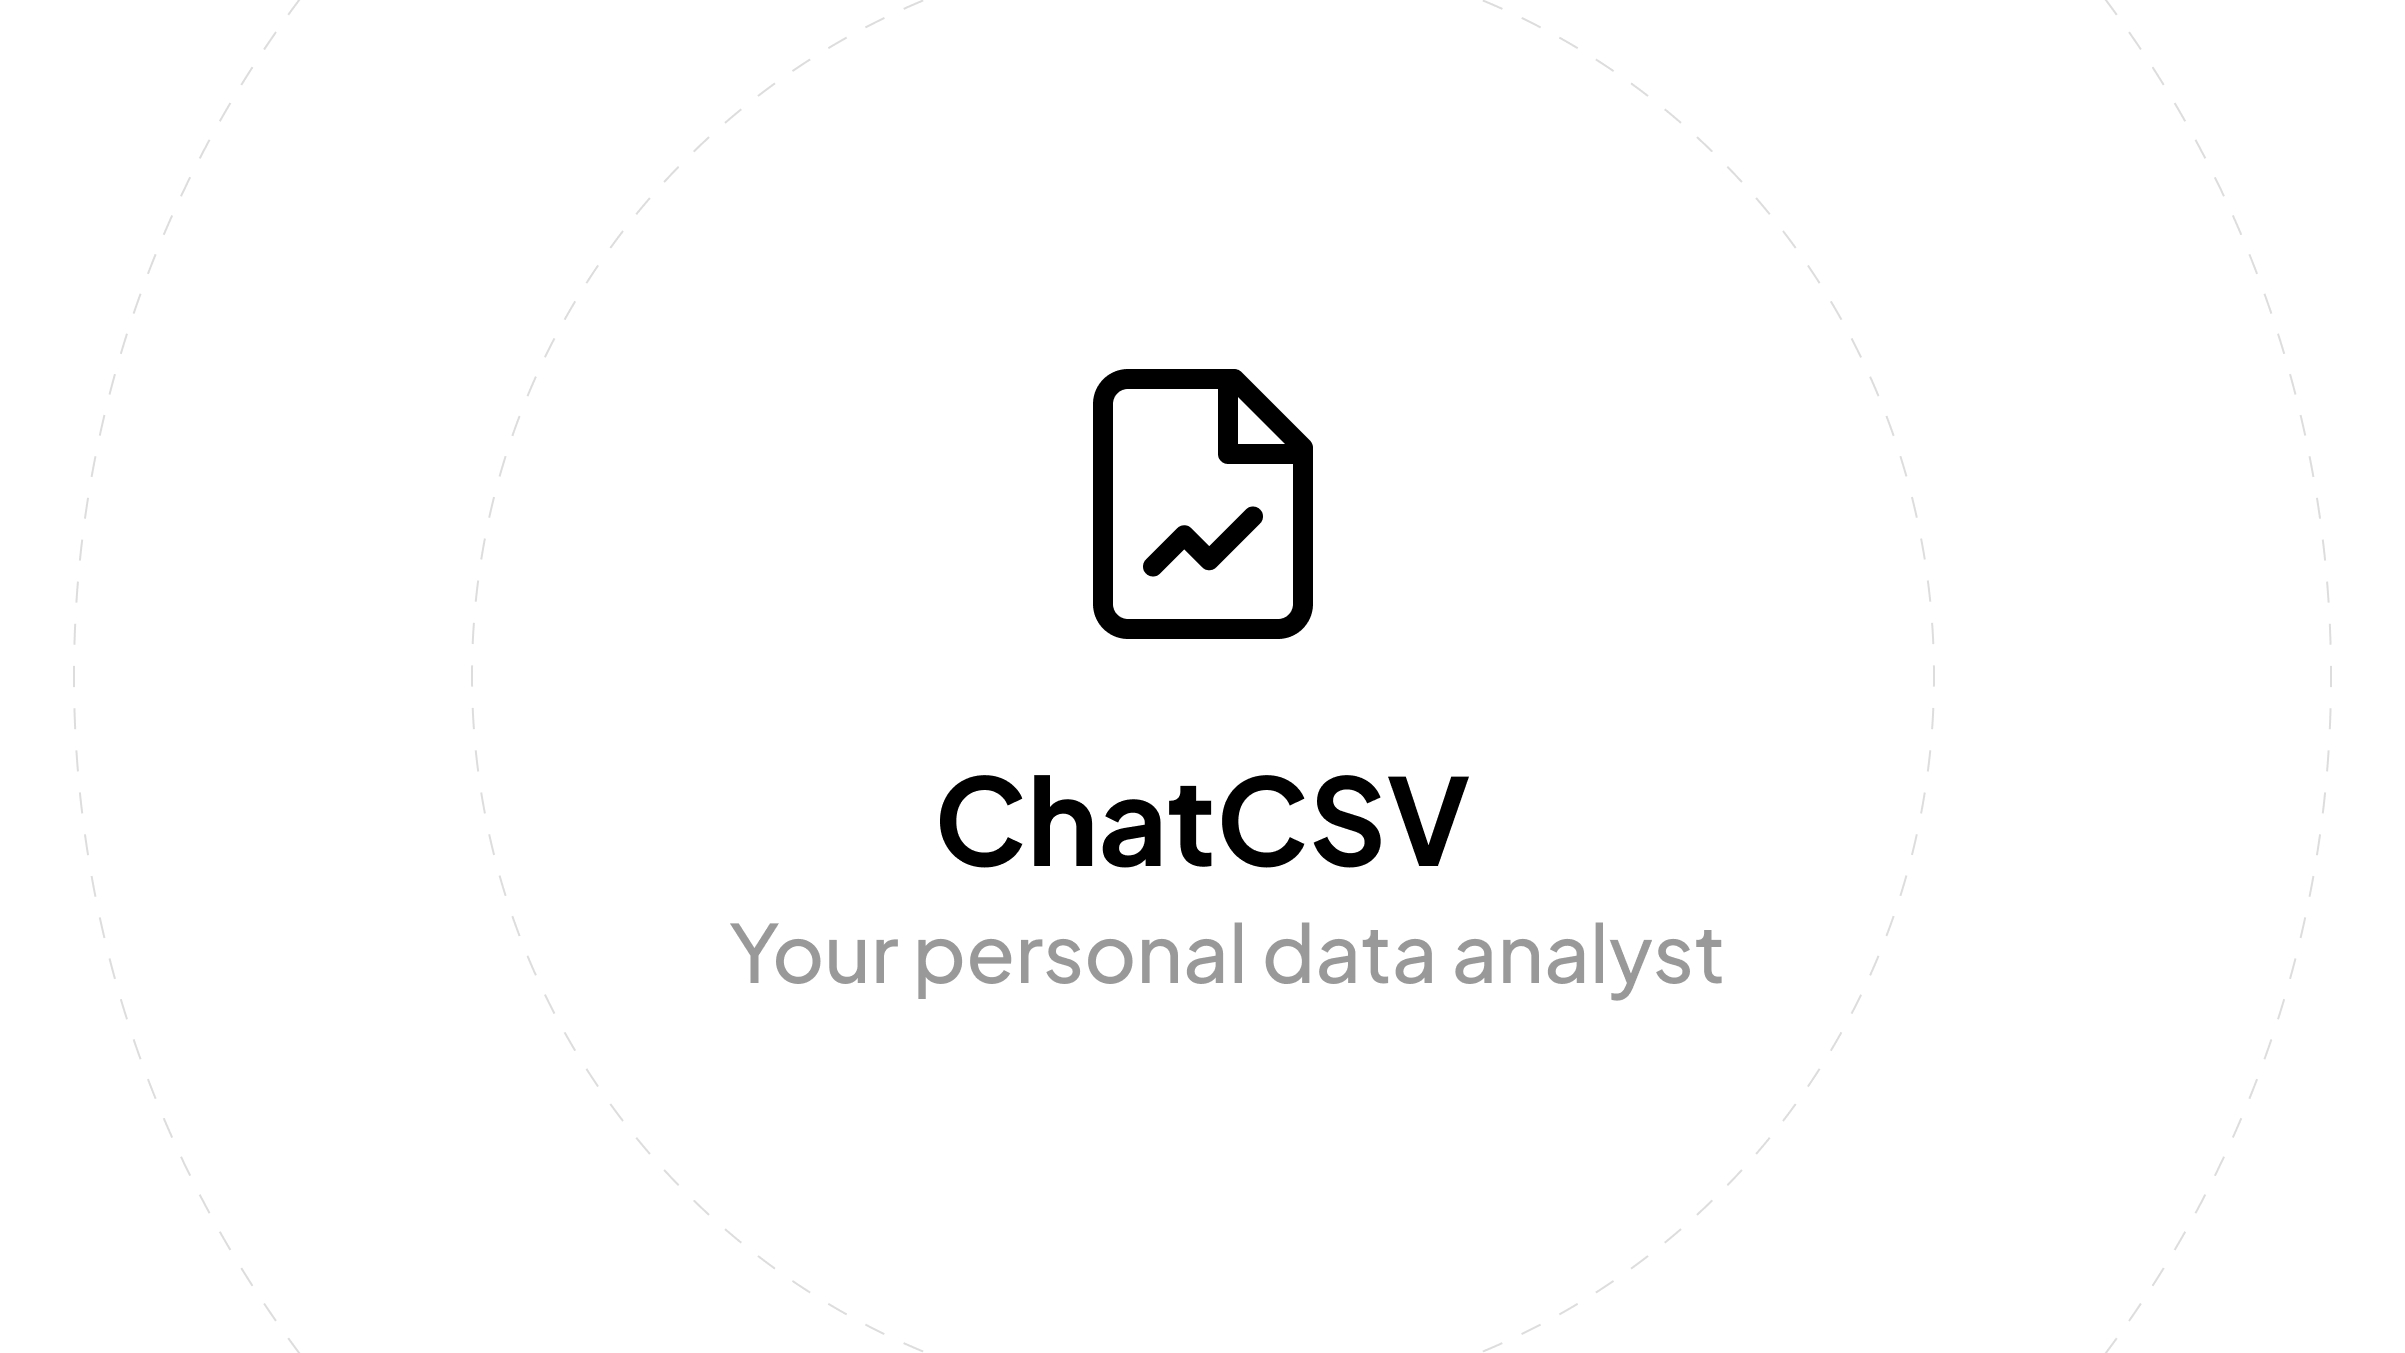 CHATCSV - Un assistant qui aide les utilisateurs à analyser les fichiers CSV et à poser des questions